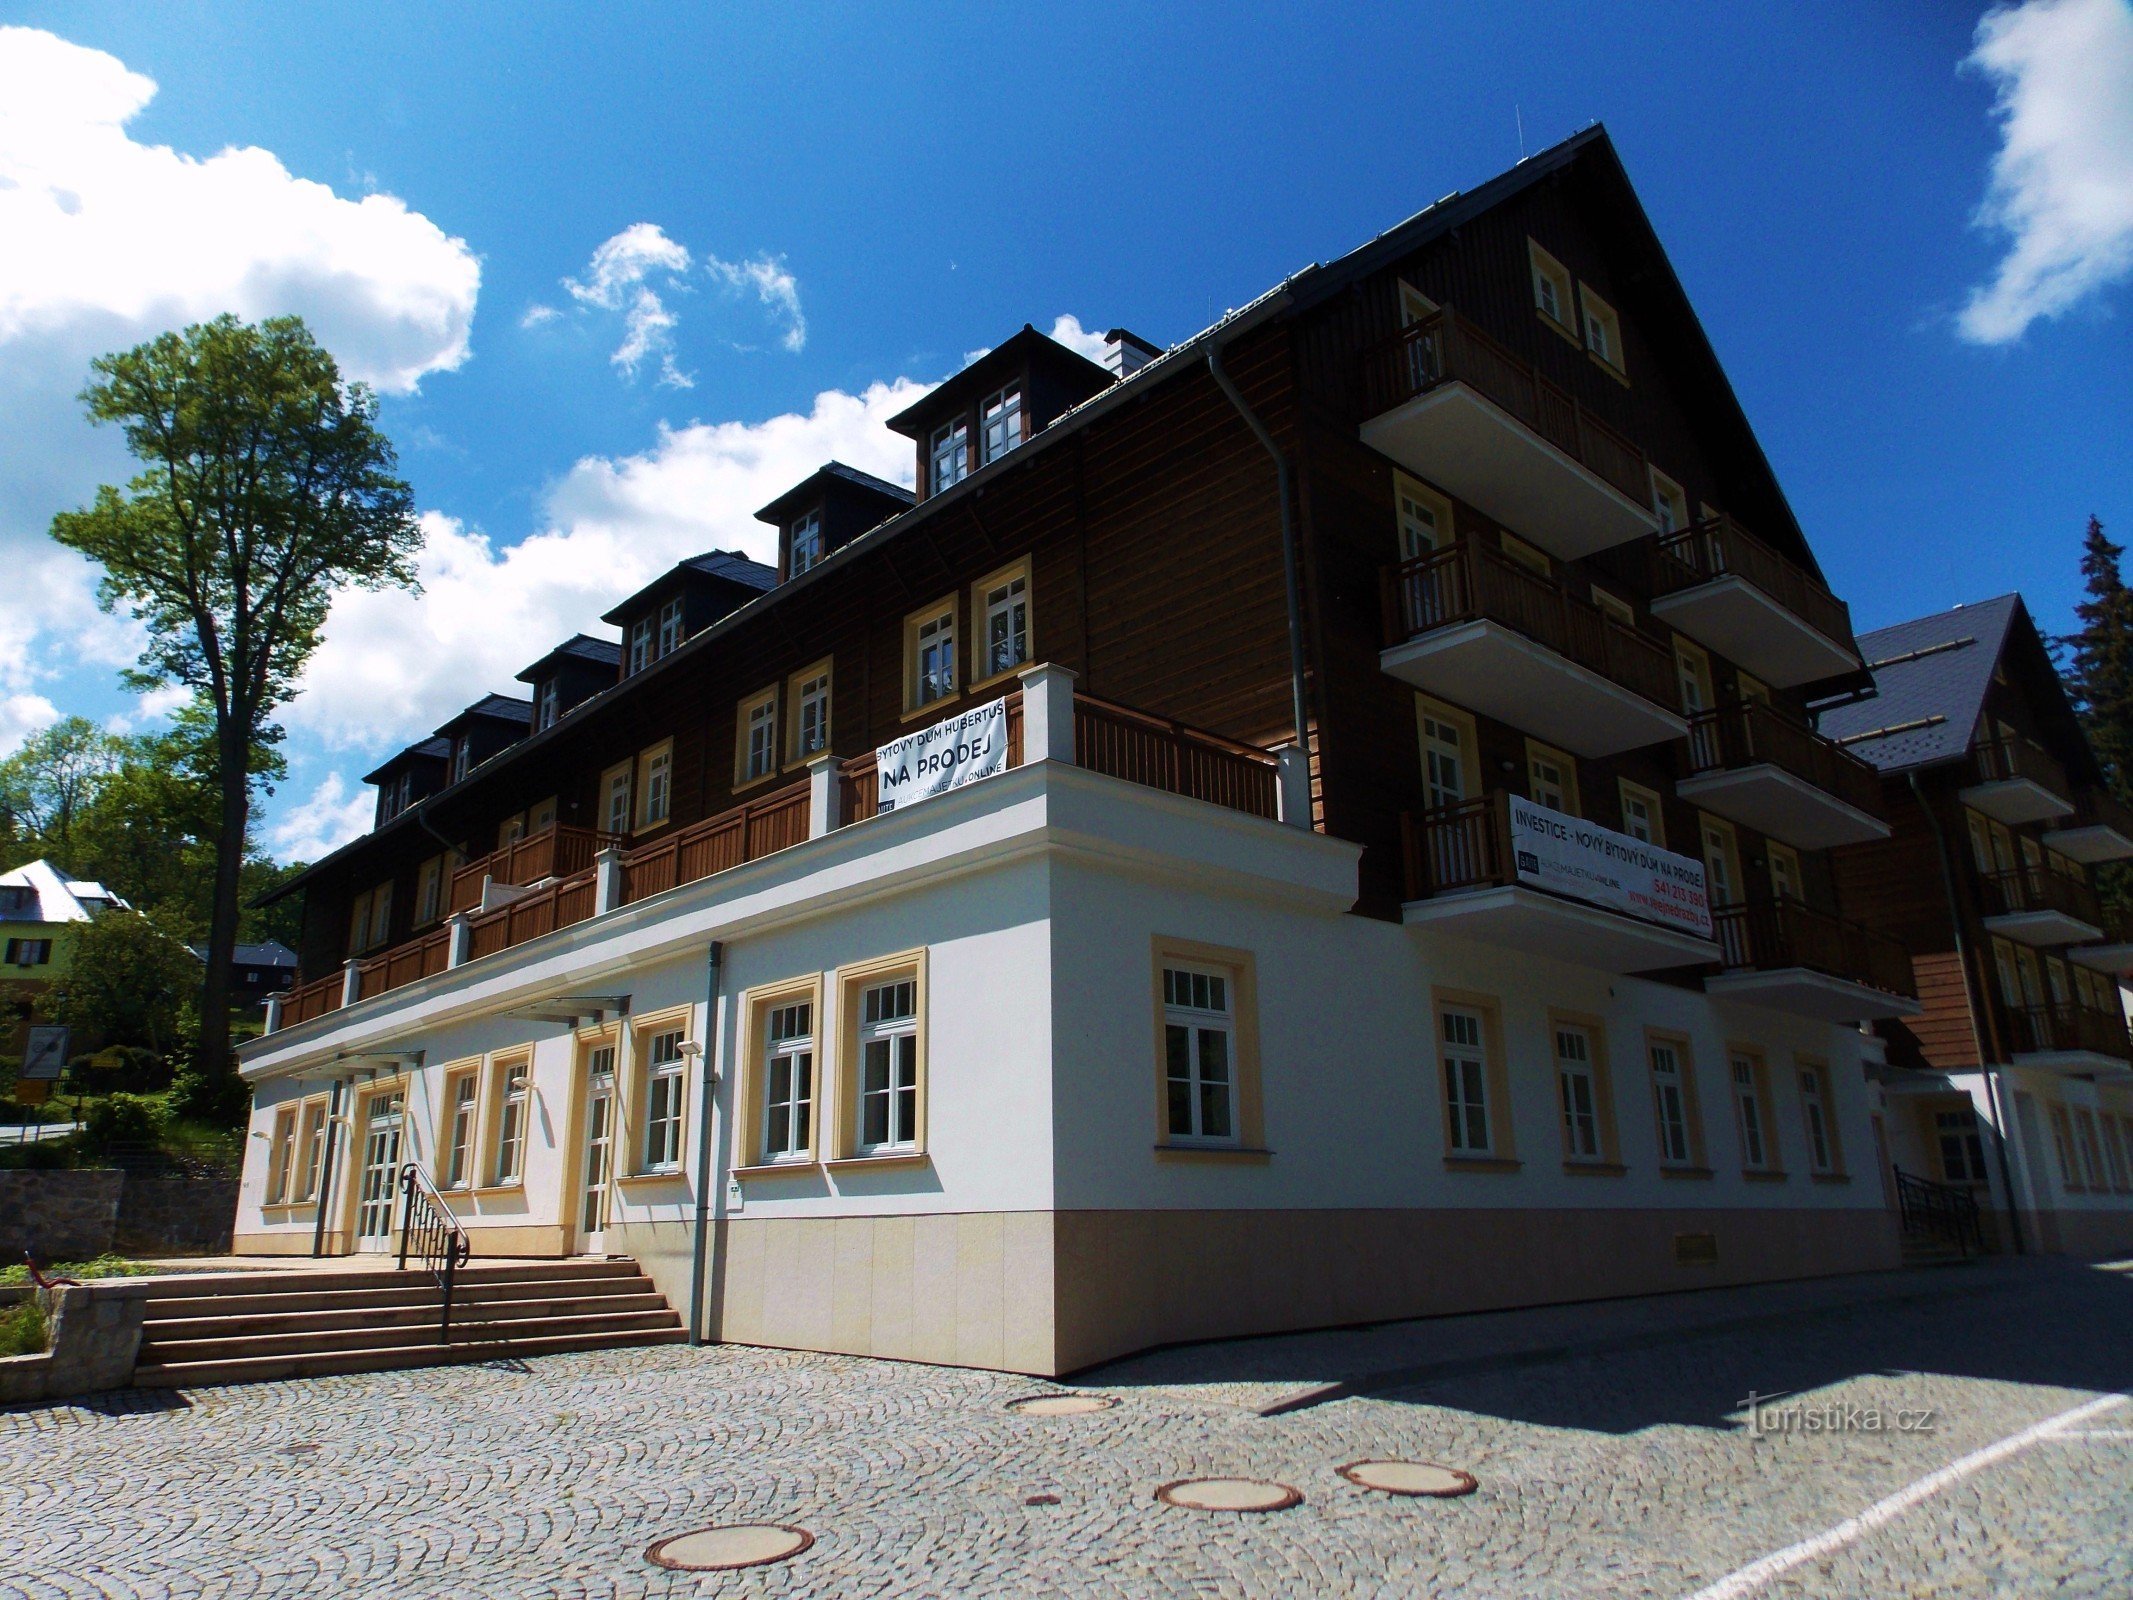 Legendarul Hotel Hubertus din Karlová Studánka